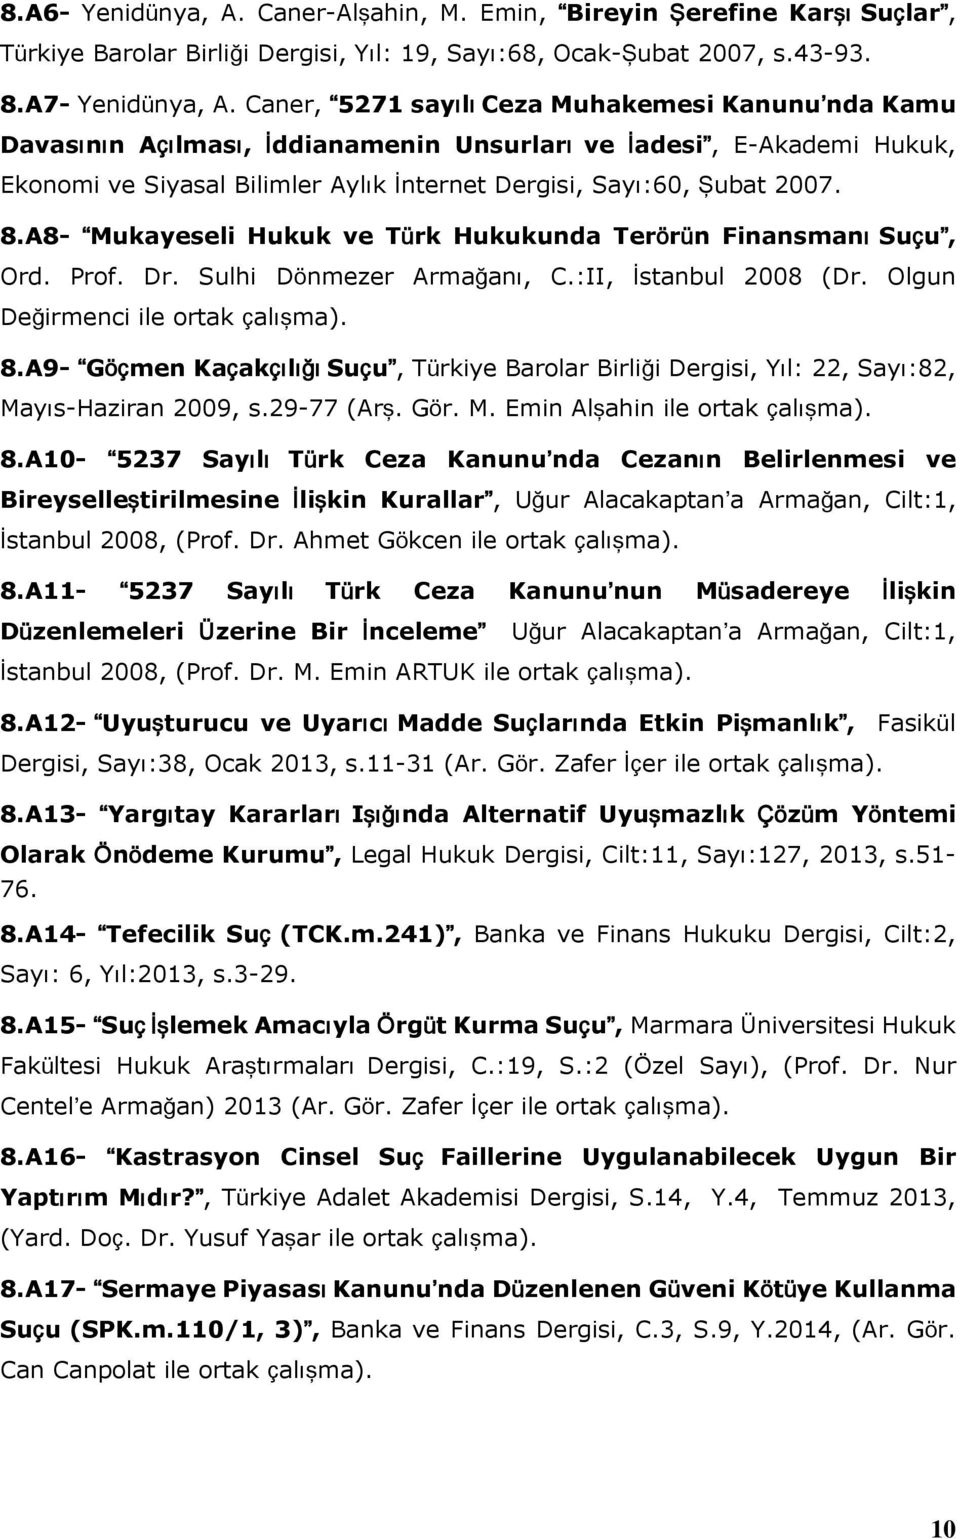 A8- Mukayeseli Hukuk ve Türk Hukukunda Terörün Finansmanı Suçu, Ord. Prof. Dr. Sulhi Dönmezer Armağanı, C.:II, İstanbul 2008 (Dr. Olgun Değirmenci ile ortak çalışma). 8.